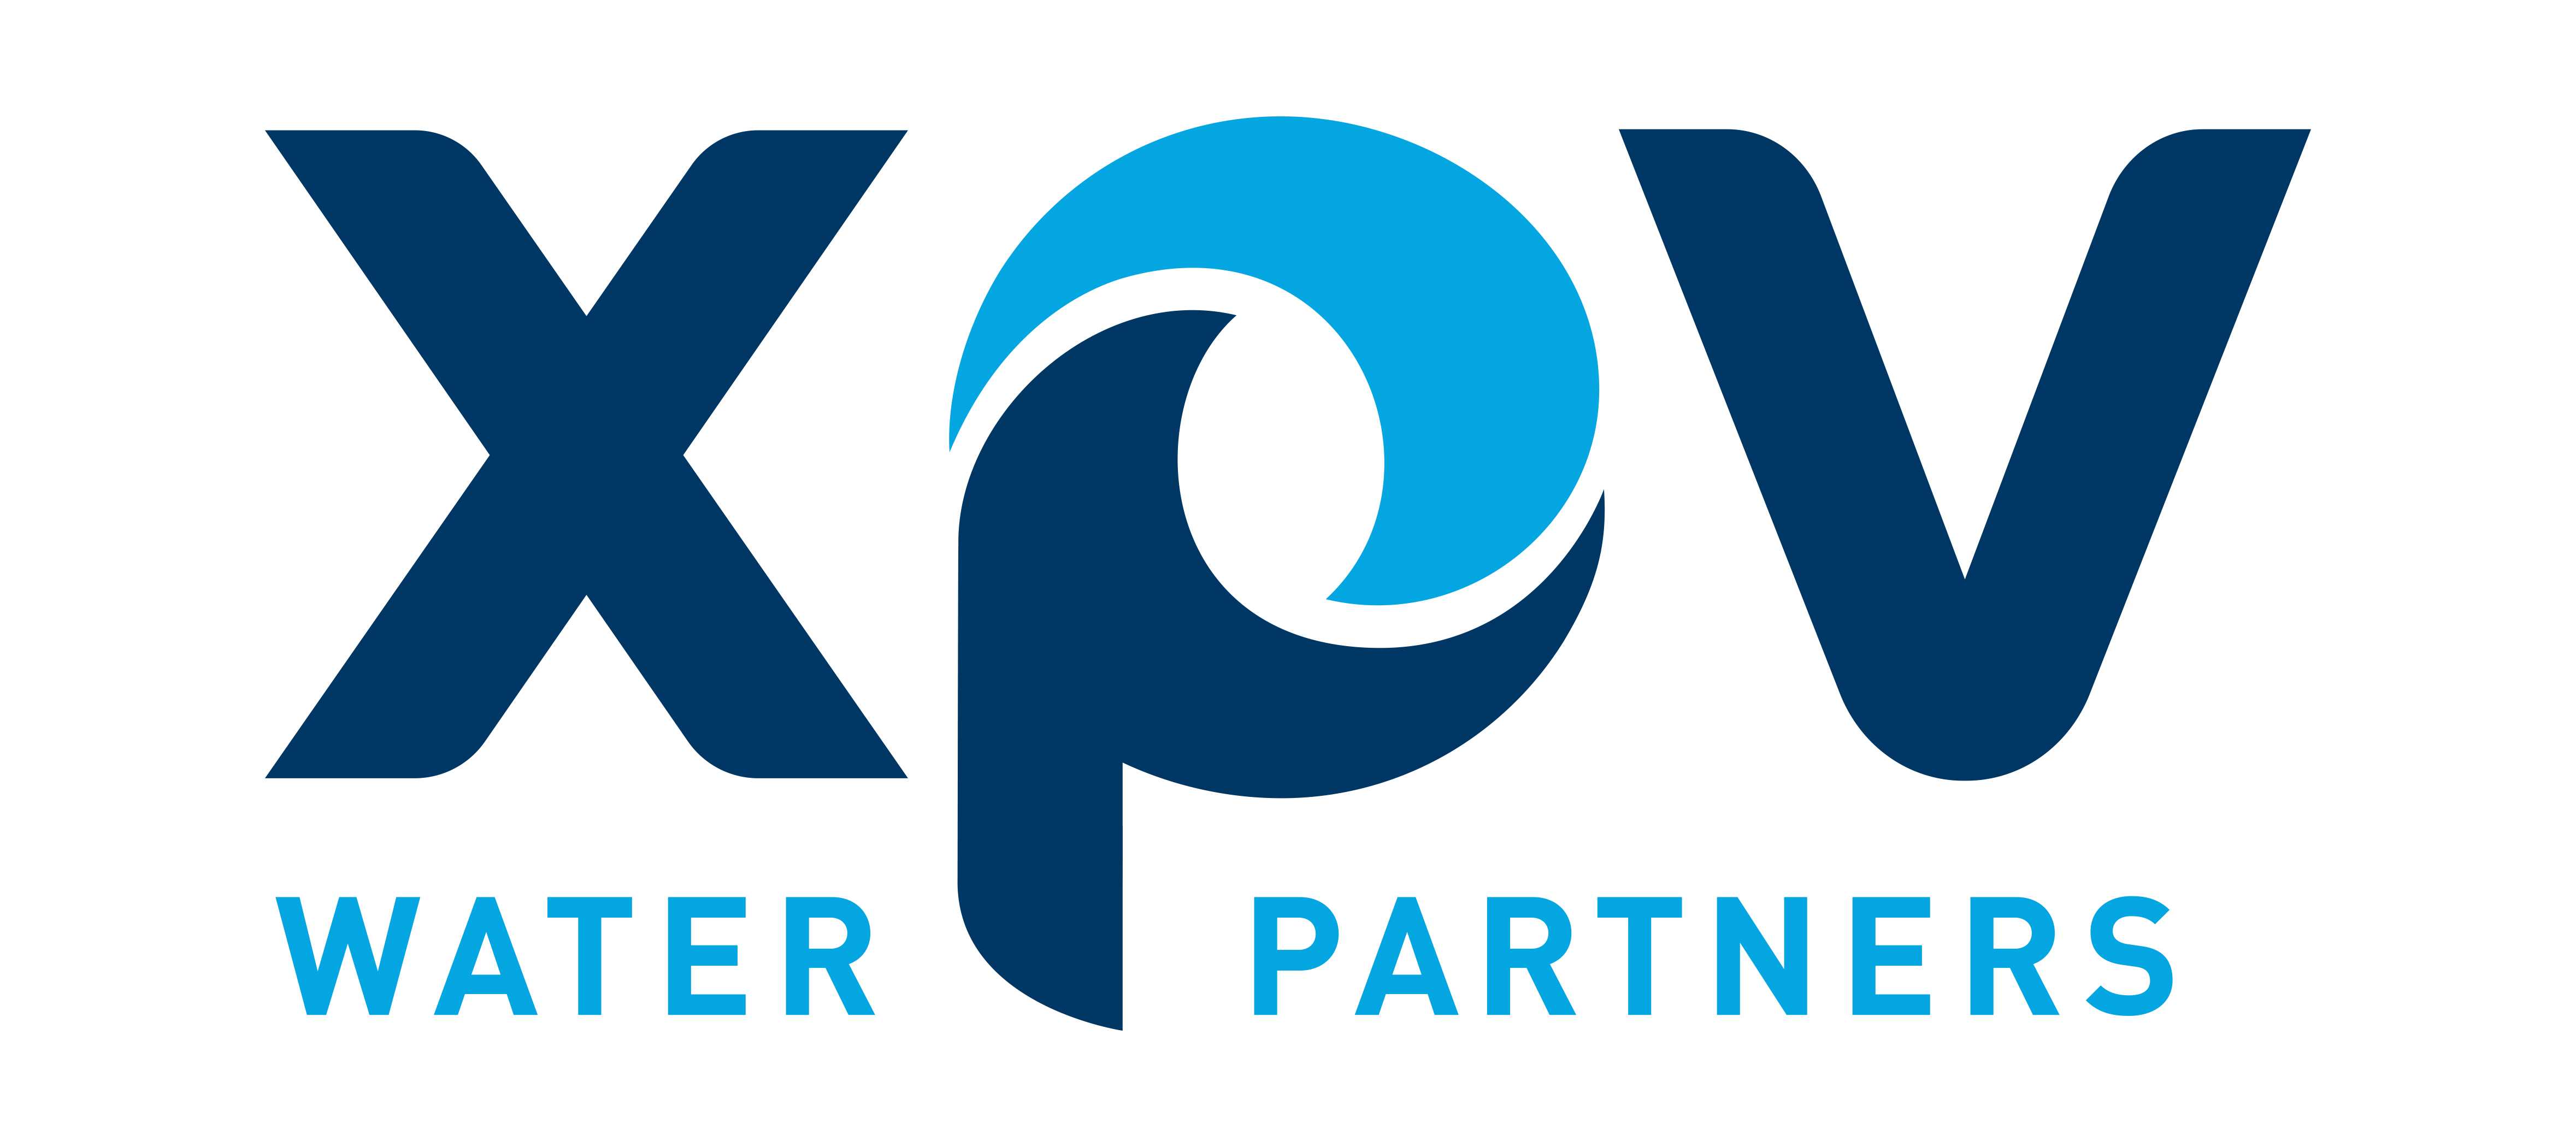 XPV Water Partners